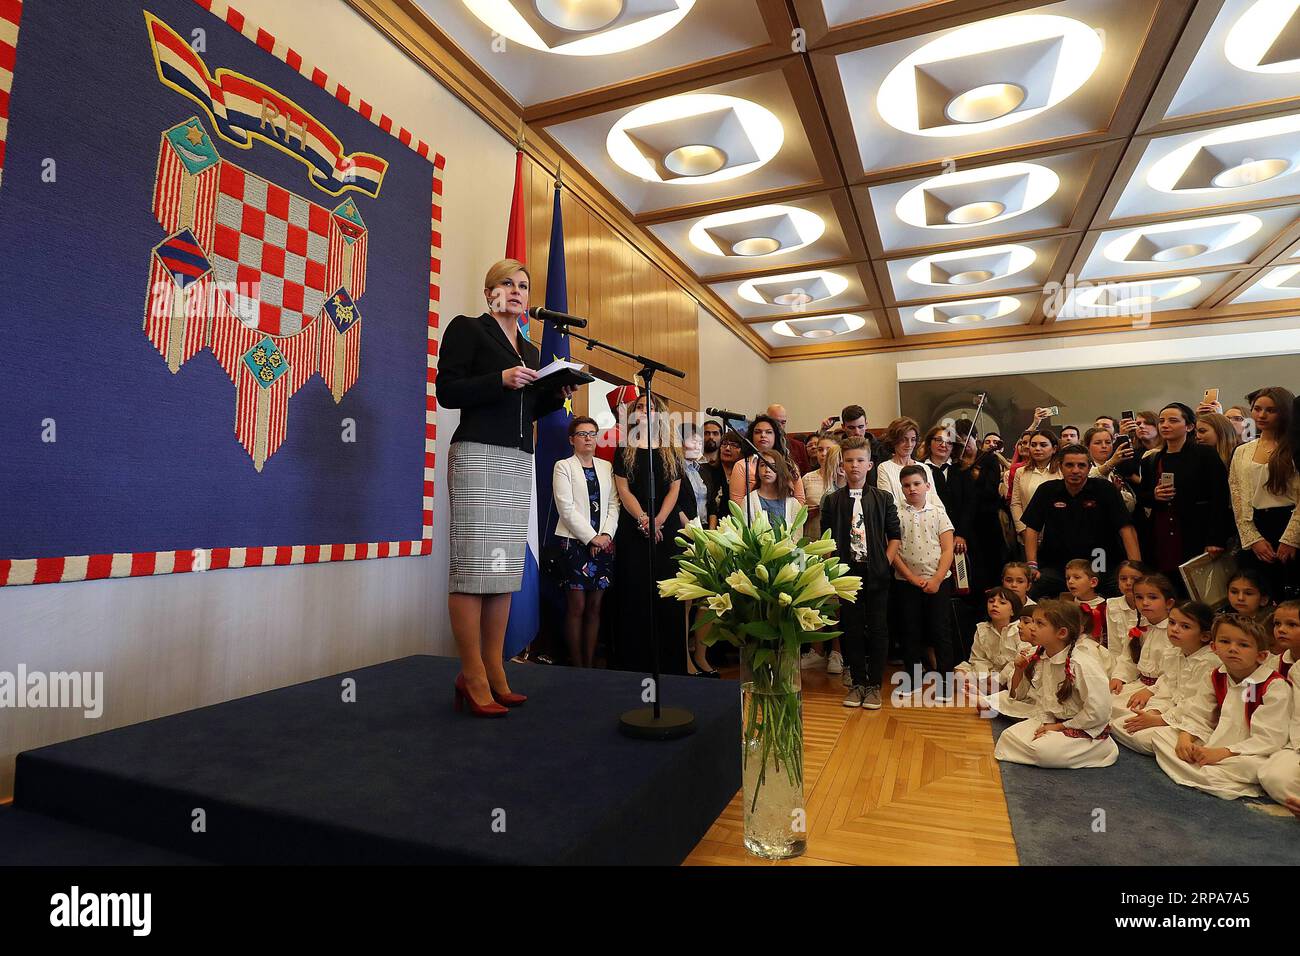 (190428) -- ZAGABRIA, 28 aprile 2019 -- il presidente croato Kolinda Grabar-Kitarovic parla durante la giornata aperta dell'Ufficio presidenziale a Zagabria, Croazia, 27 aprile 2019. L'evento è stato a tema Croato - la mia lingua come supporto per le persone che usano il croato come seconda lingua. ) CROAZIA-ZAGABRIA-UFFICIO PRESIDENZIALE-OPEN DAY GORANXSTANZL PUBLICATIONXNOTXINXCHN Foto Stock